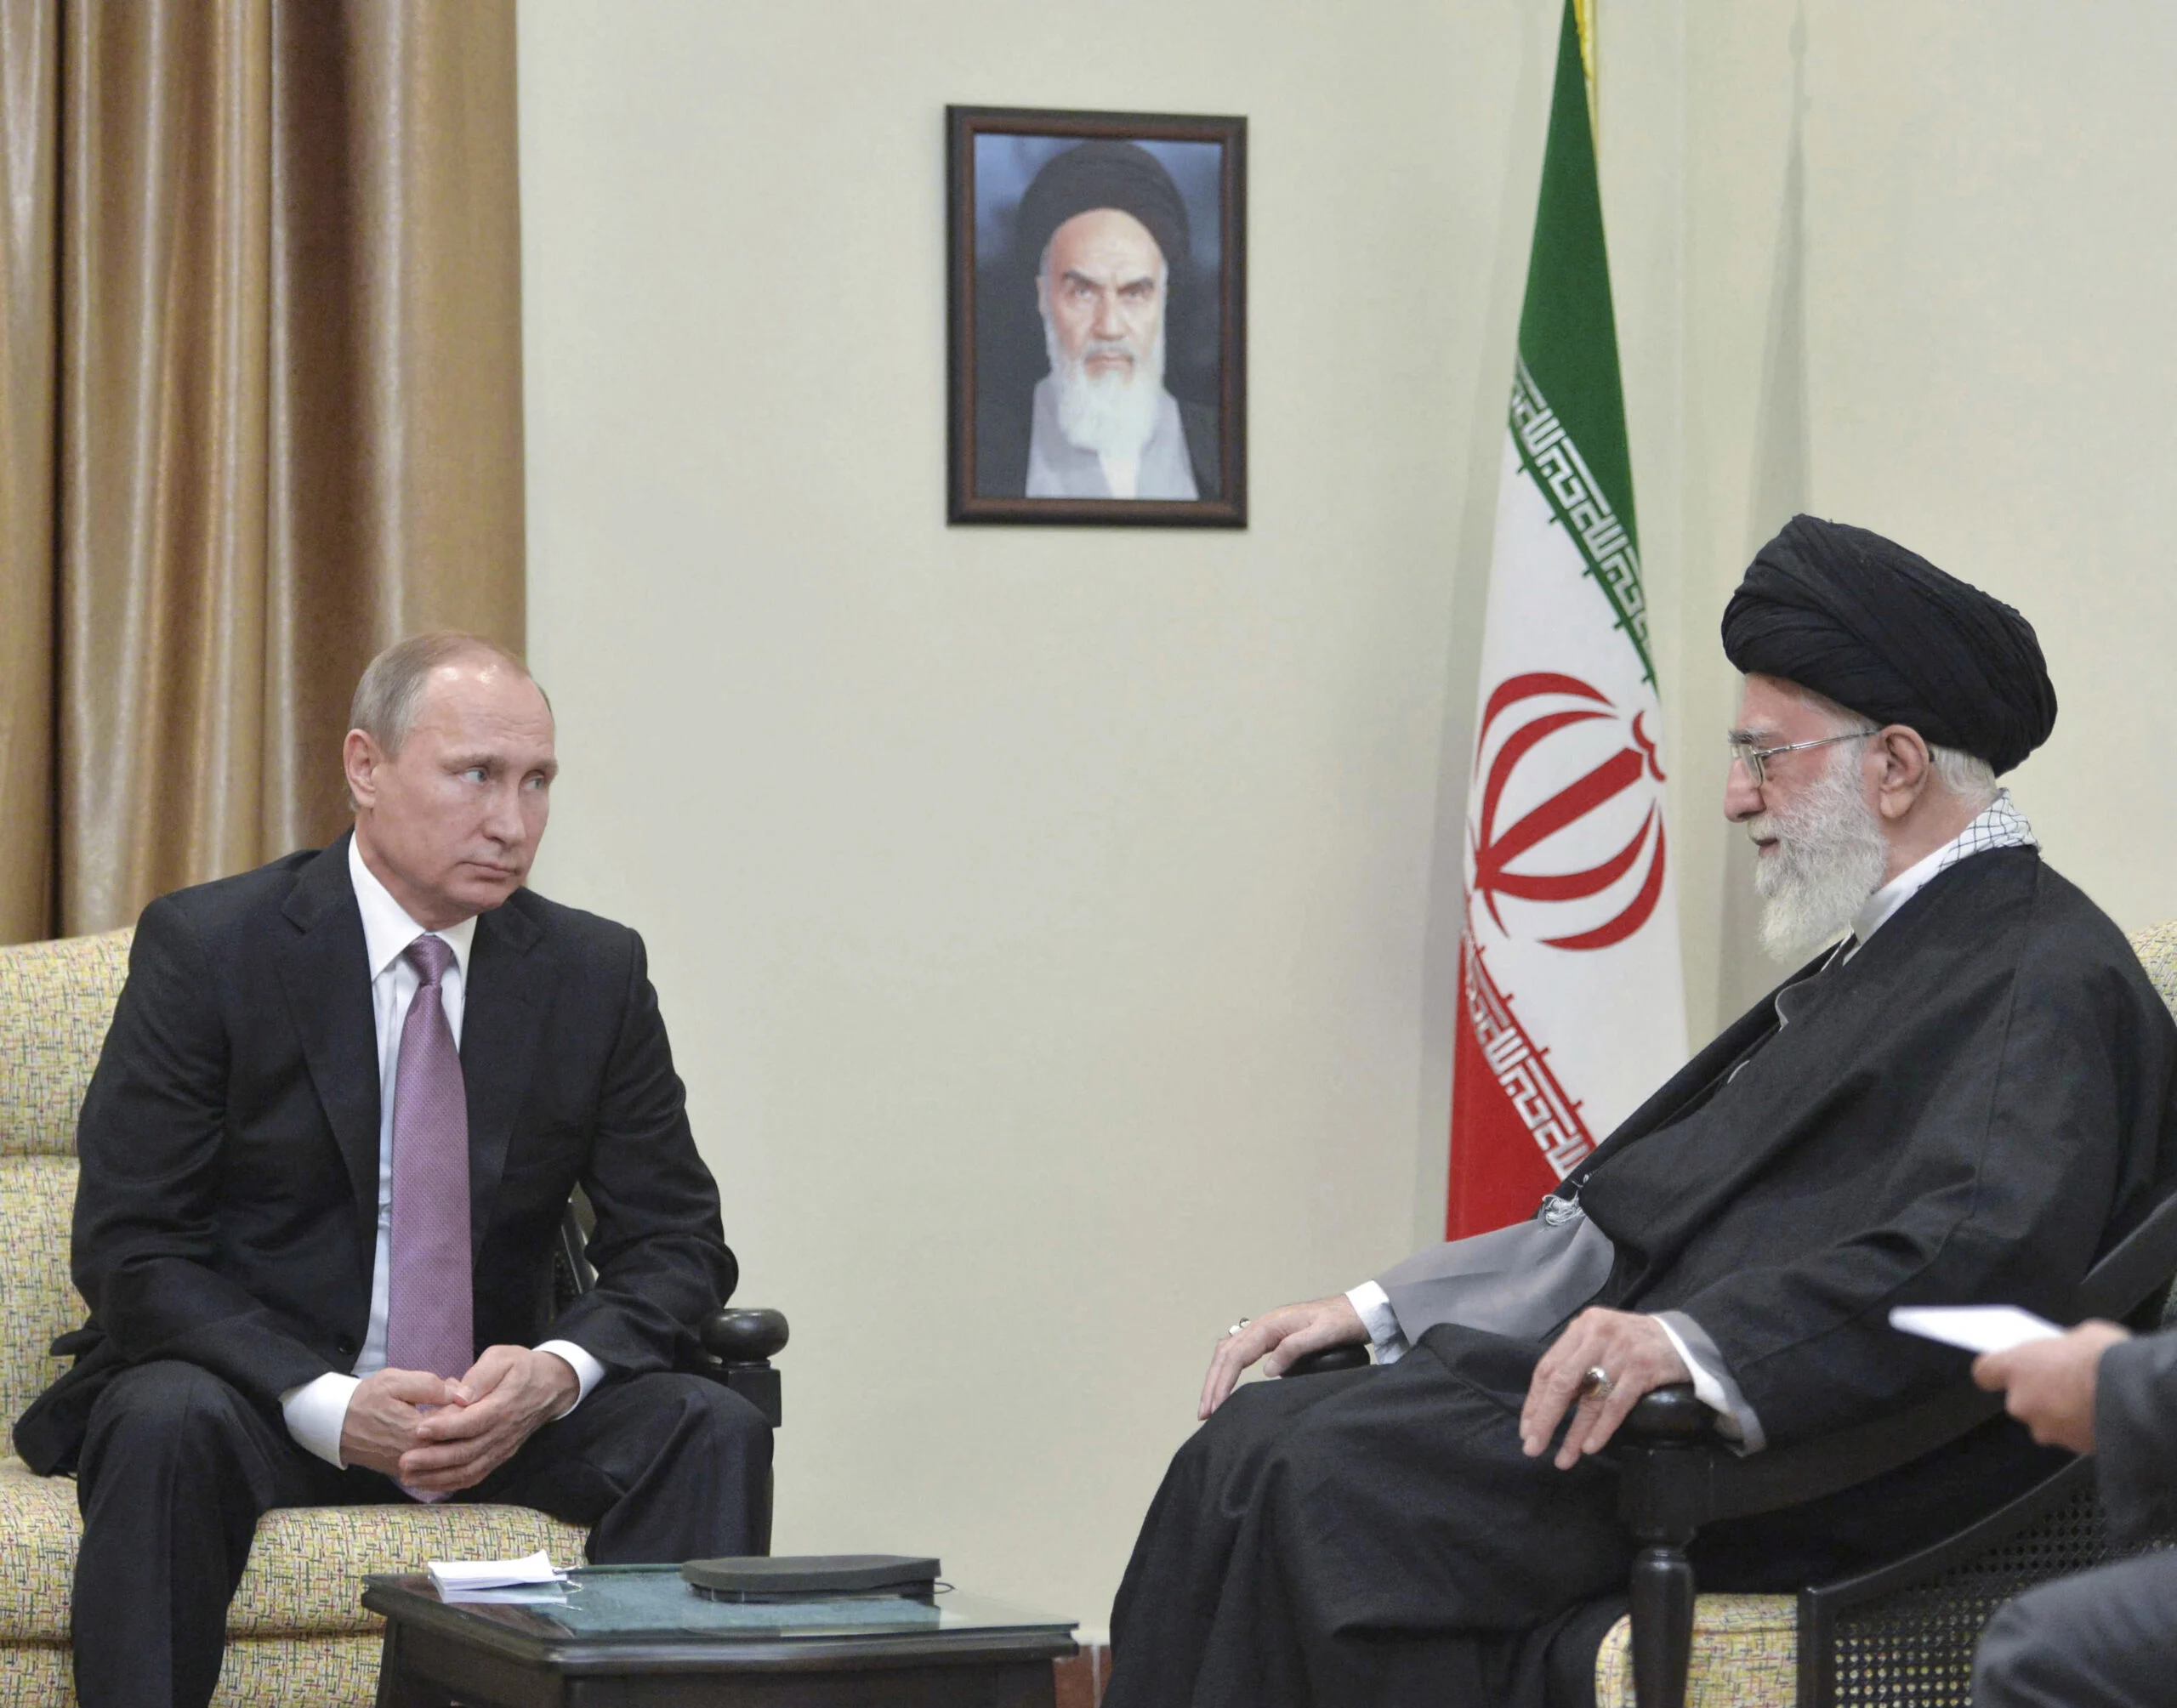 פוטין בפגישה עם חמינאי באיראן בשנת 2015